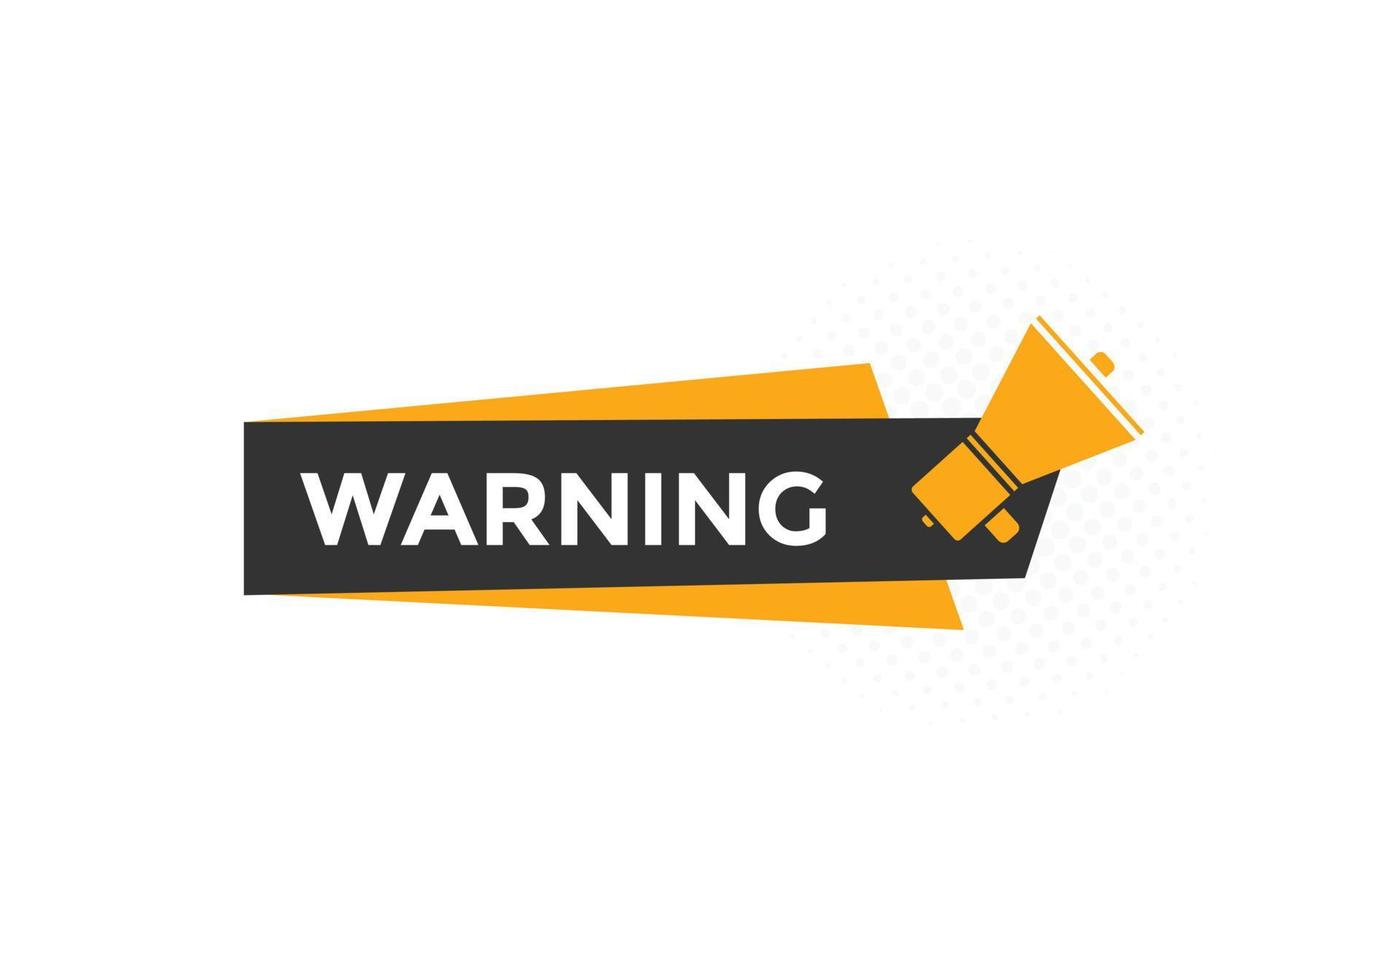 bouton de texte d'avertissement. bulle d'avertissement. bannière web colorée d'avertissement. illustration vectorielle. activer le modèle de signe d'étiquette vecteur